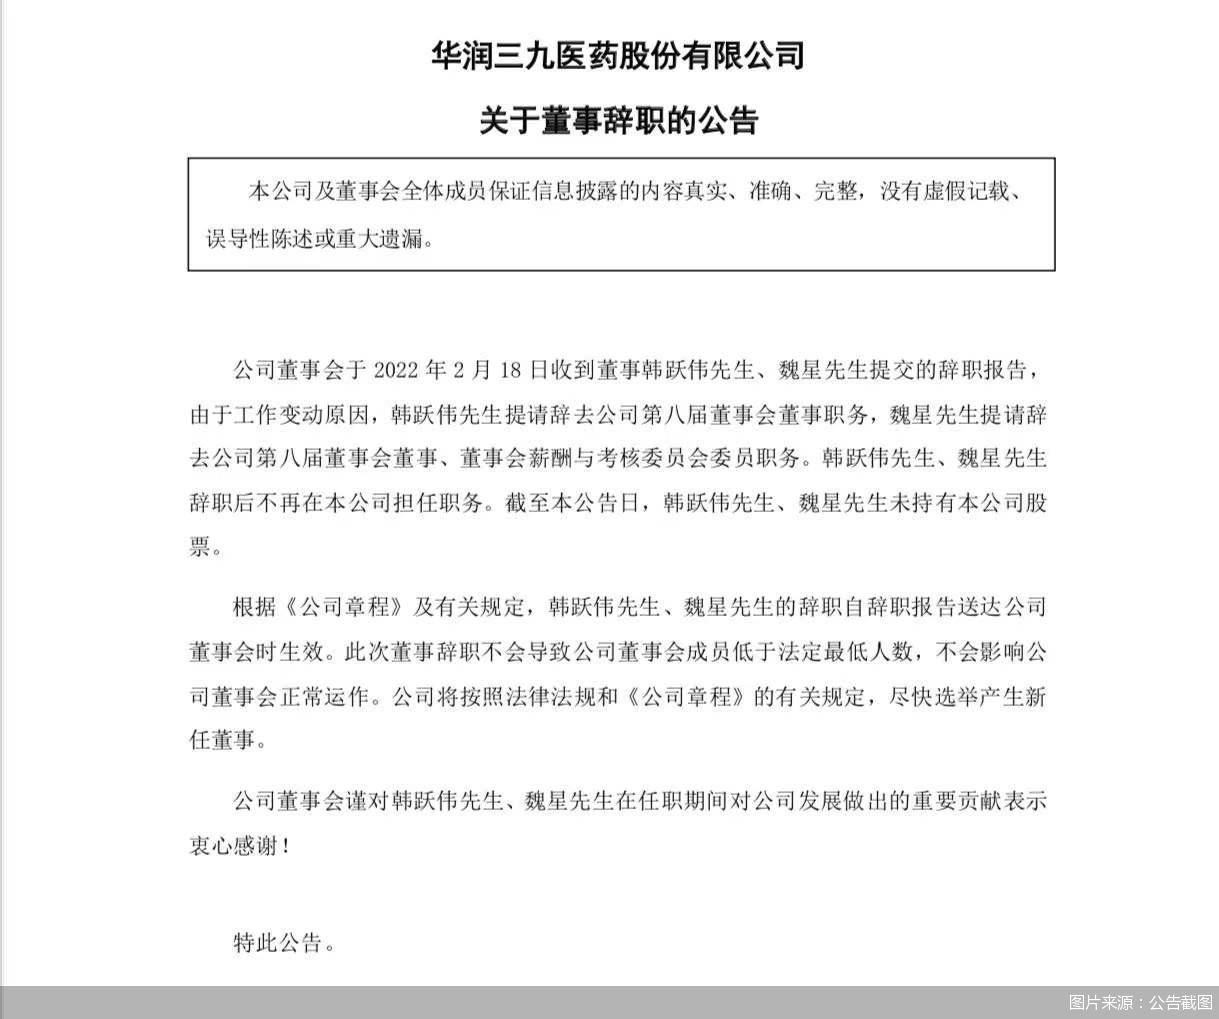 公司董事会于2022年2月18日收到董事韩跃伟,魏星提交的辞职报告,韩跃